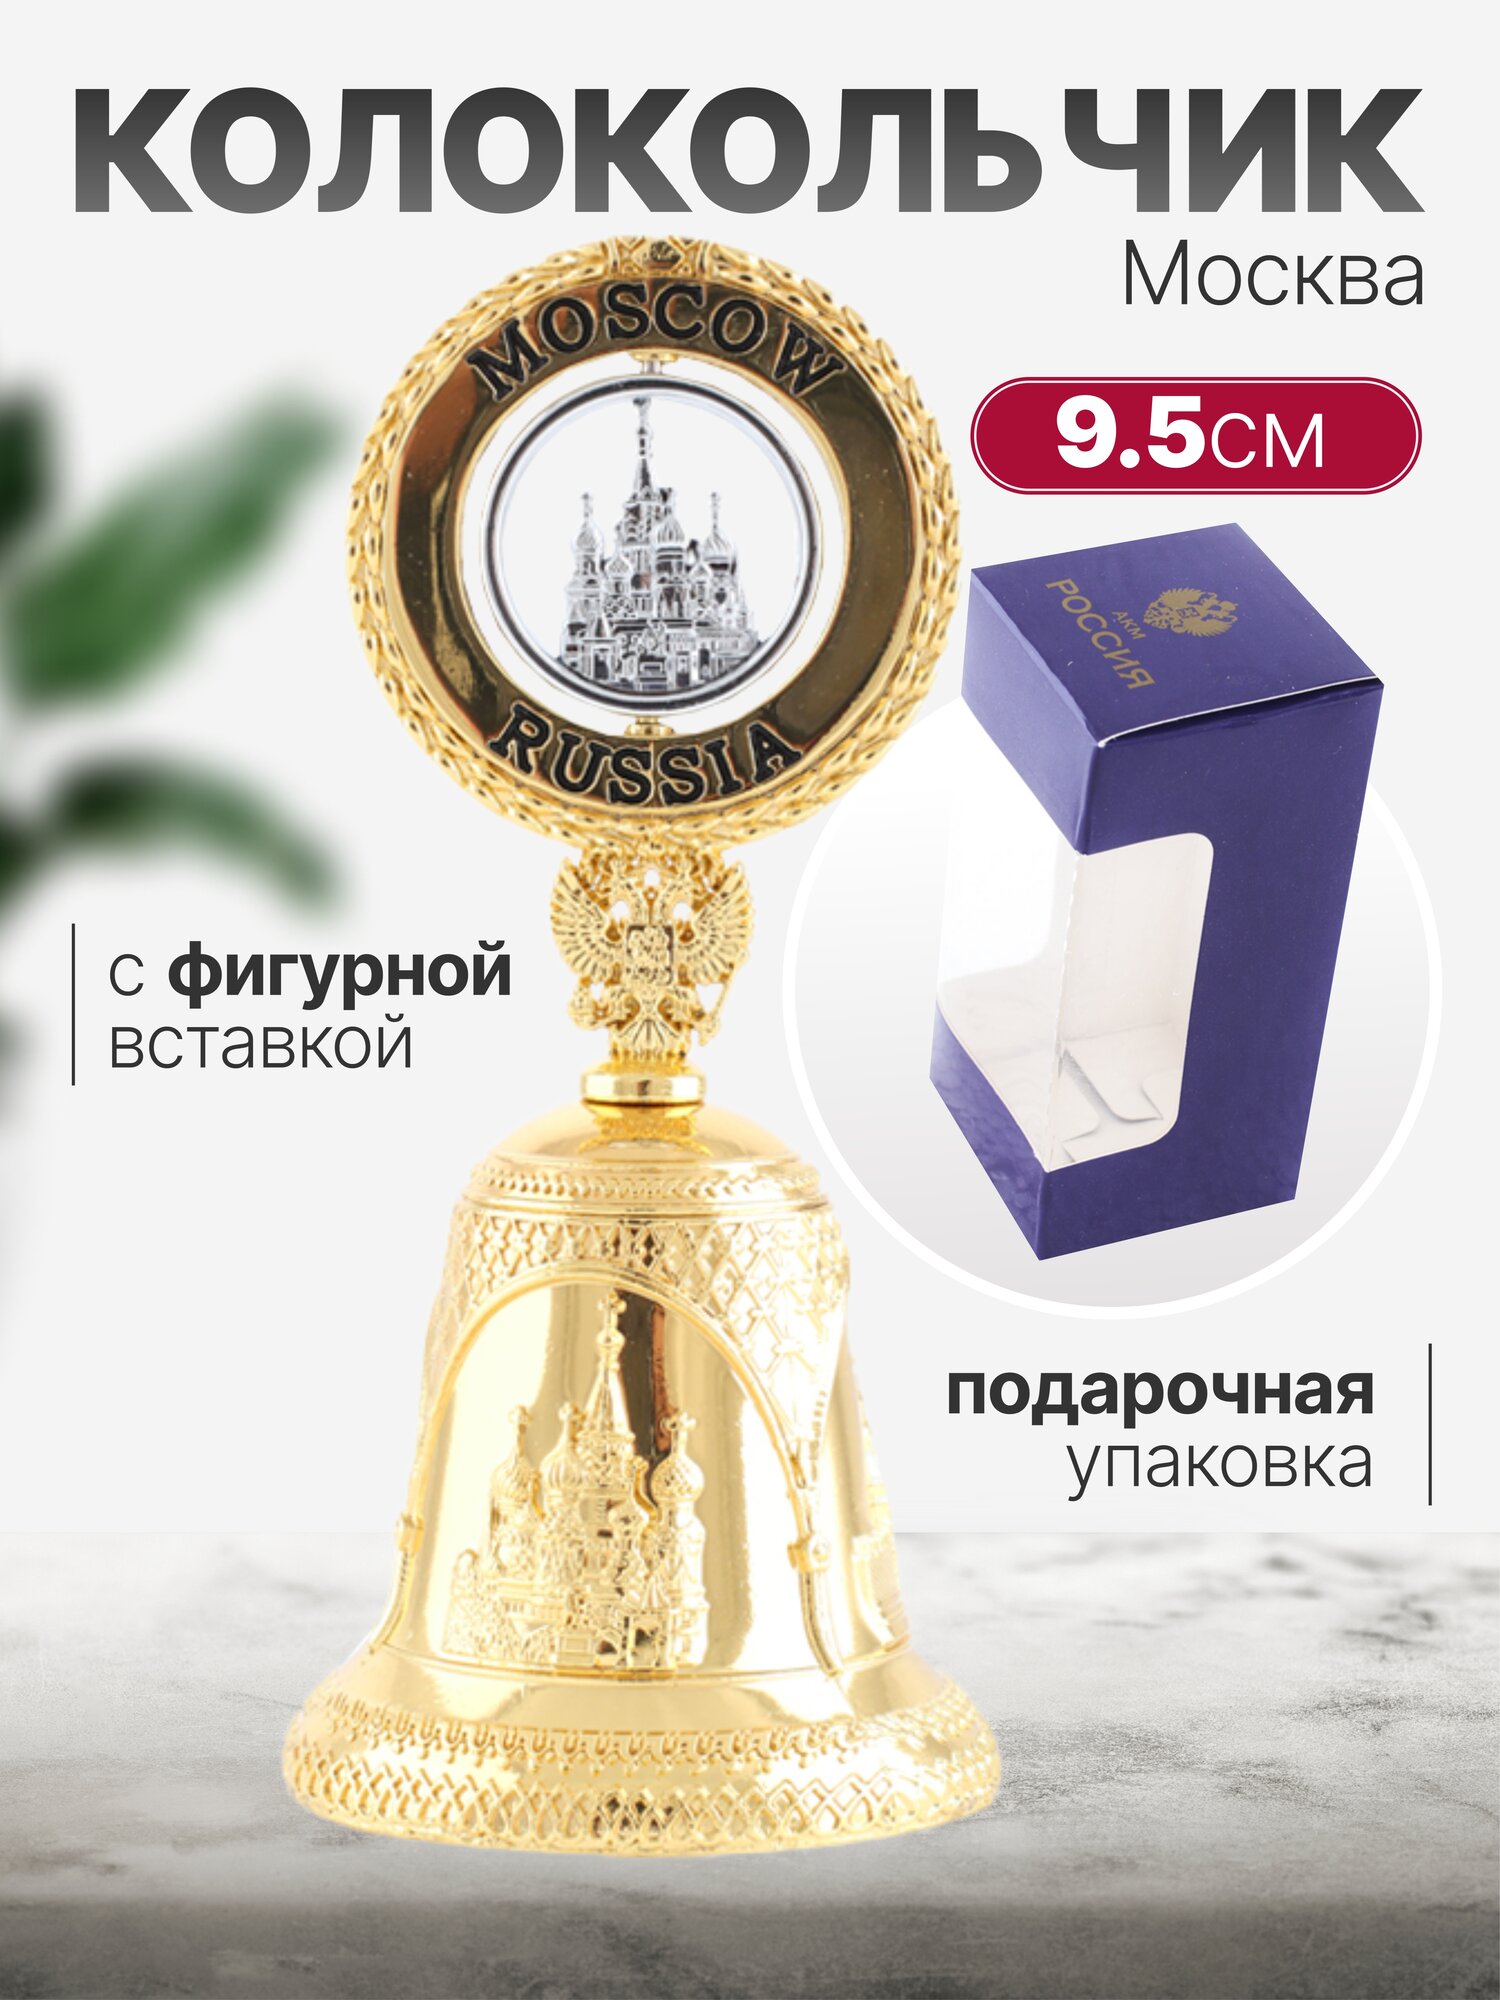 Колокольчик Москва с фигурной вставкой, цвет золото, высота 9,5см